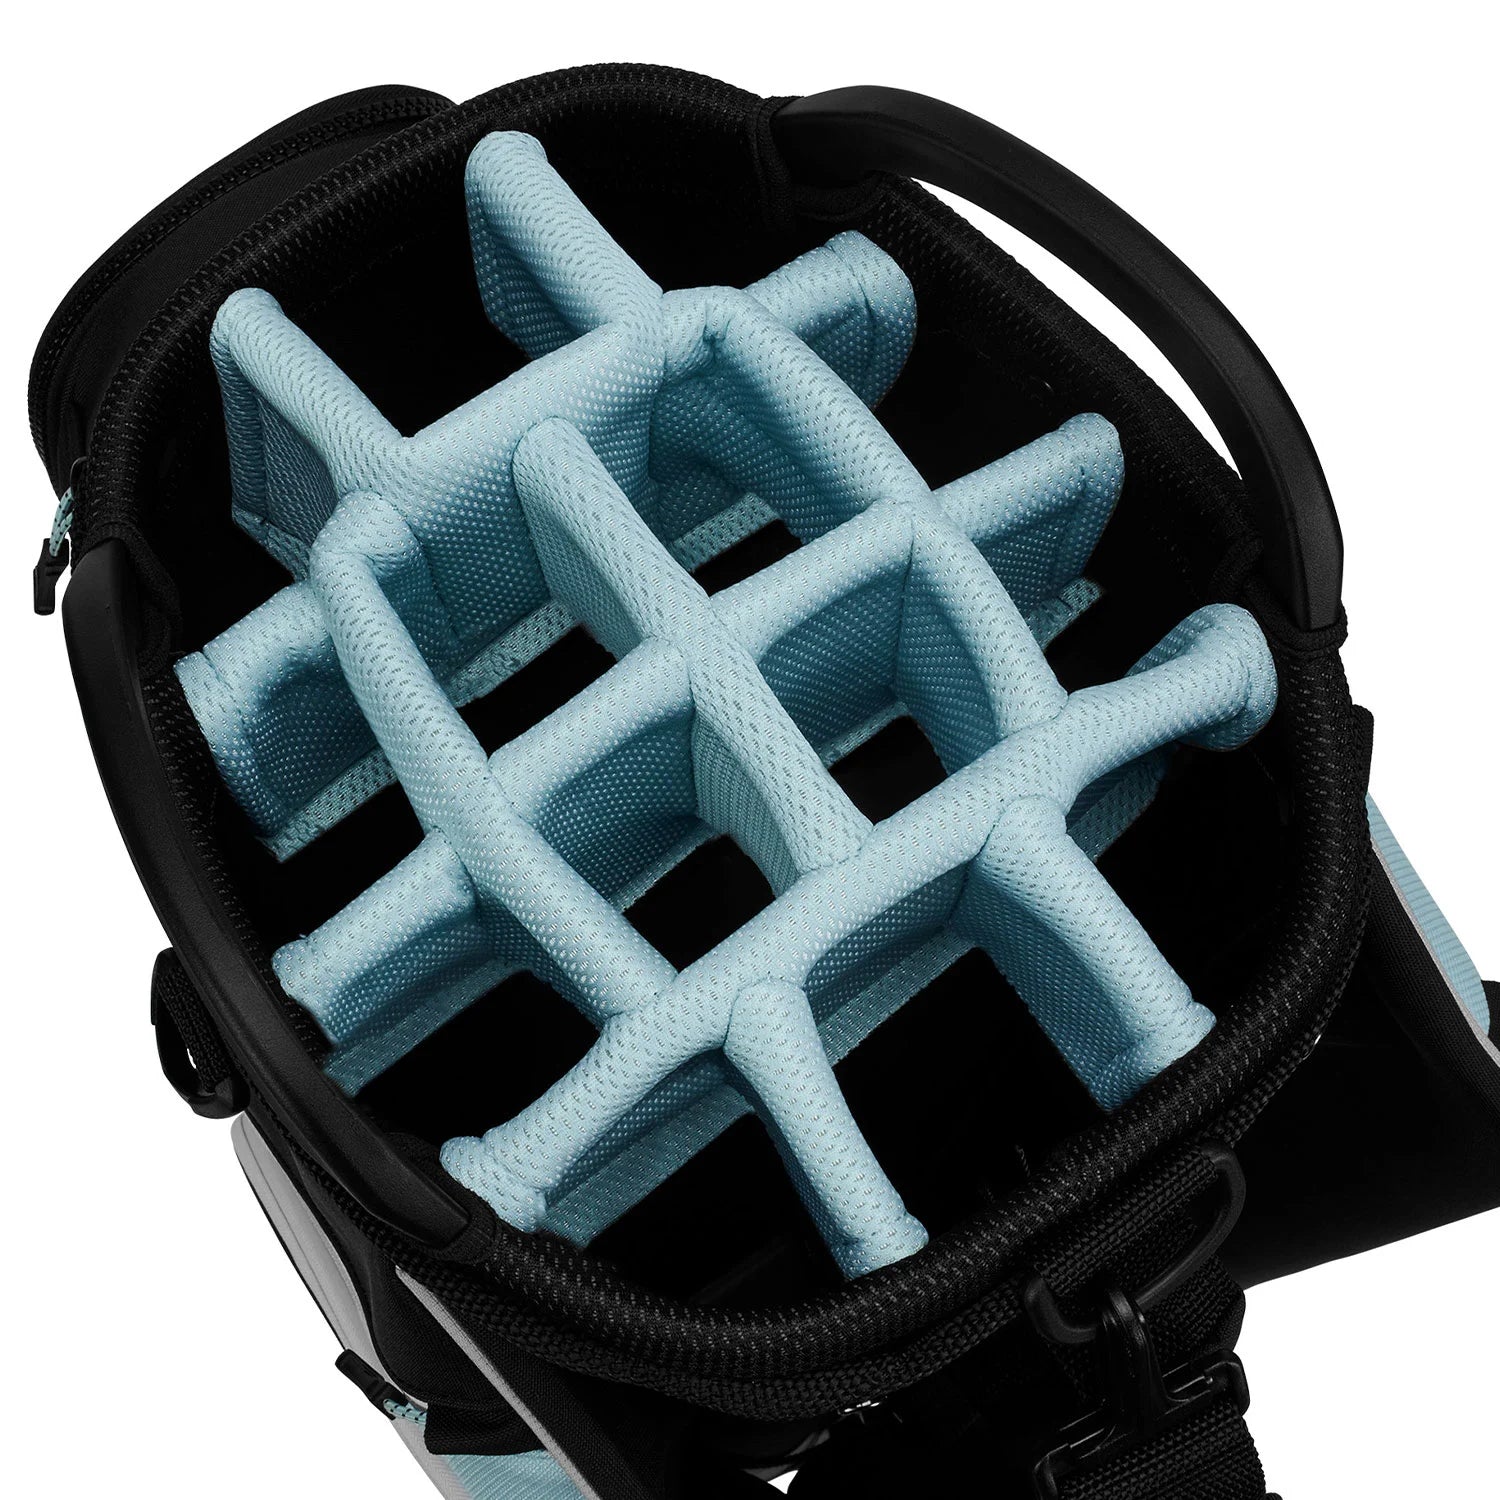 Ultralight Pro Cart Golf Bag Musta | Sininen